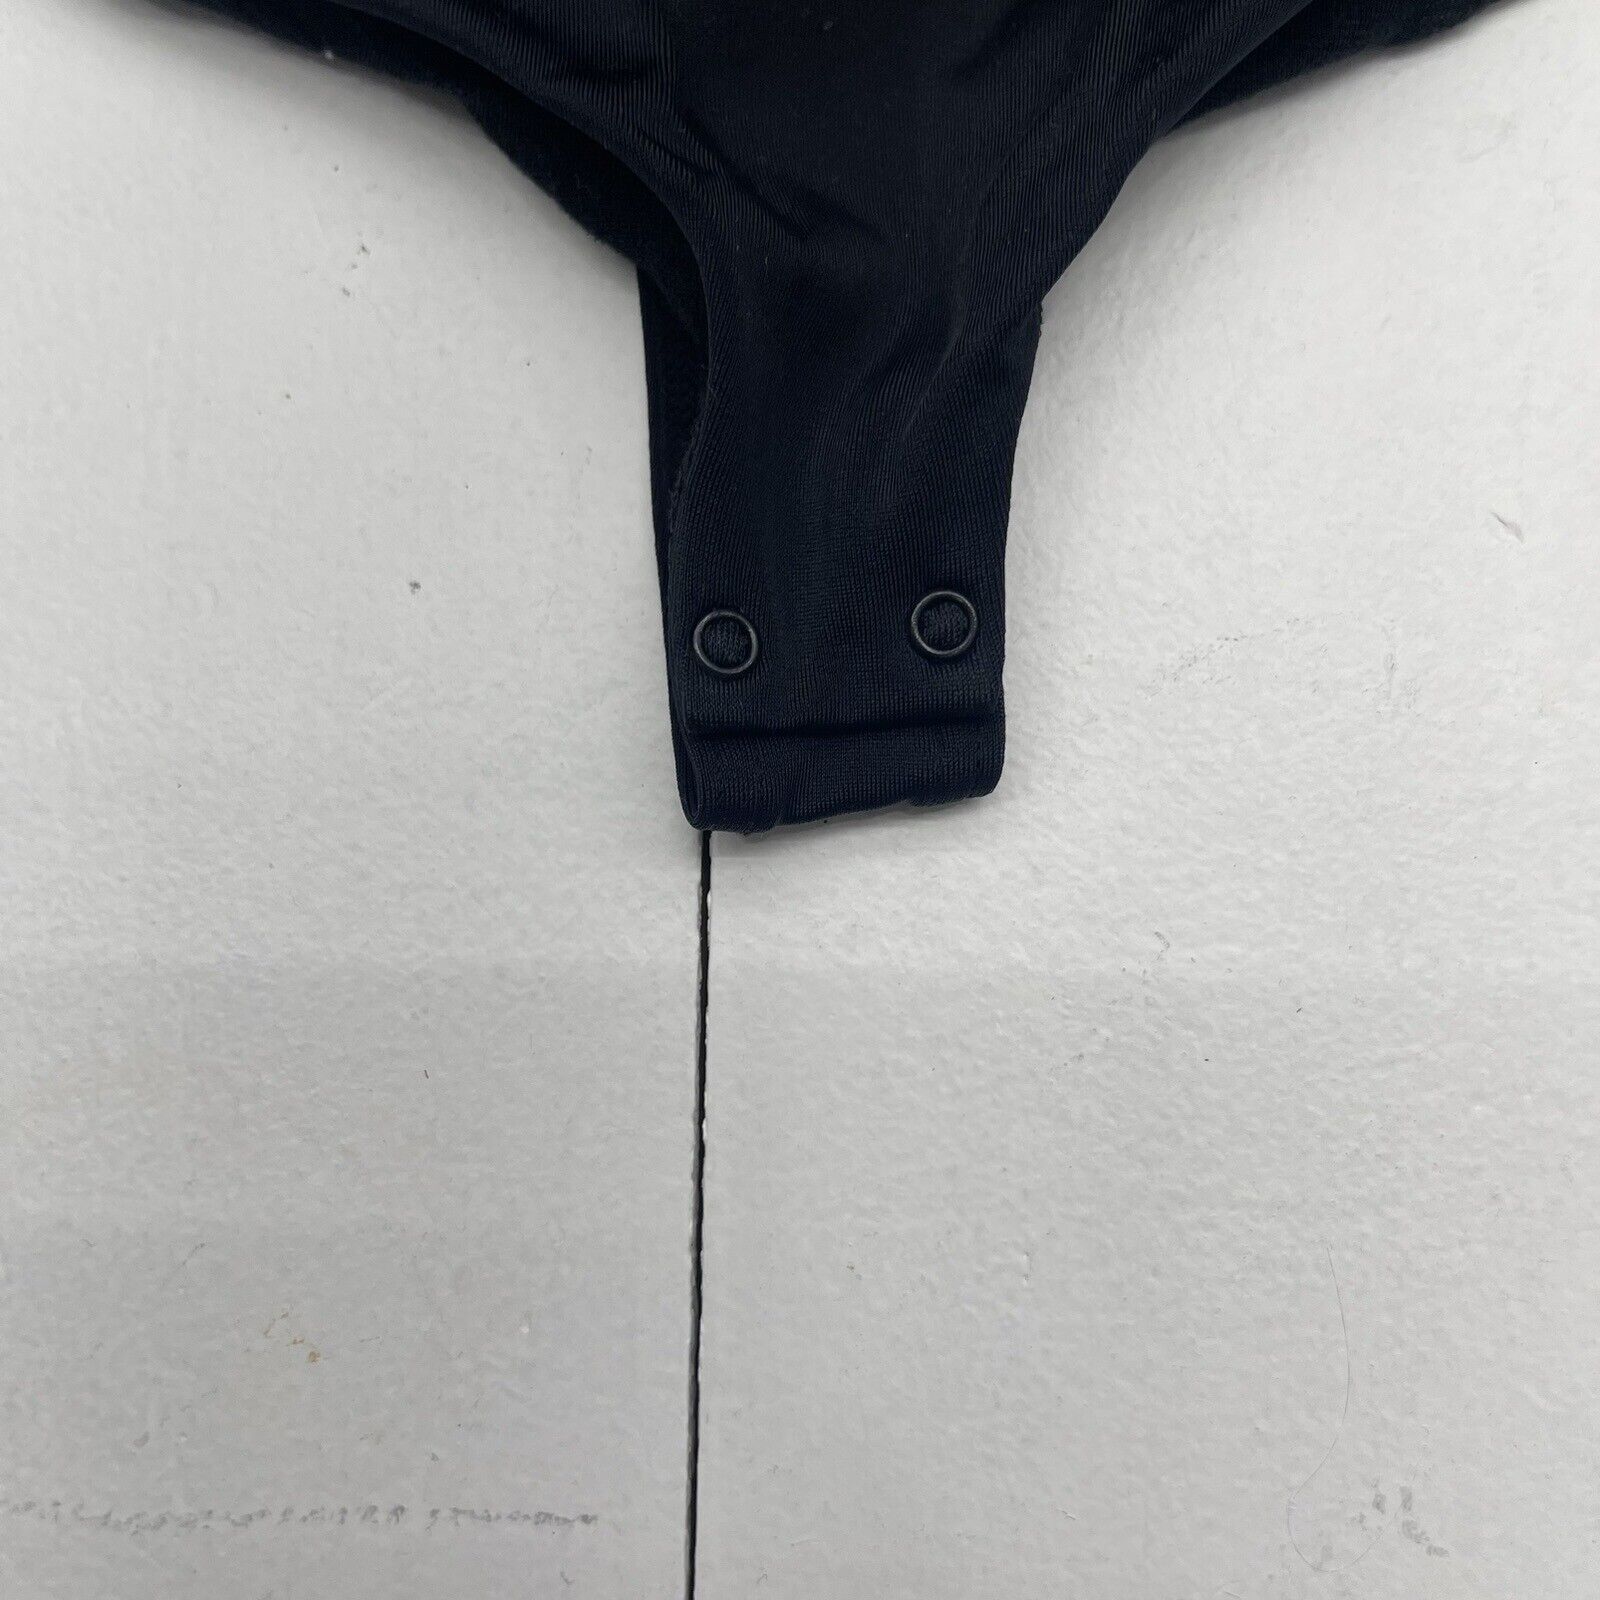 Wolford Mat De Luxe Form Black Bodysuit Shapewear Women's XSC New $215 -  beyond exchange